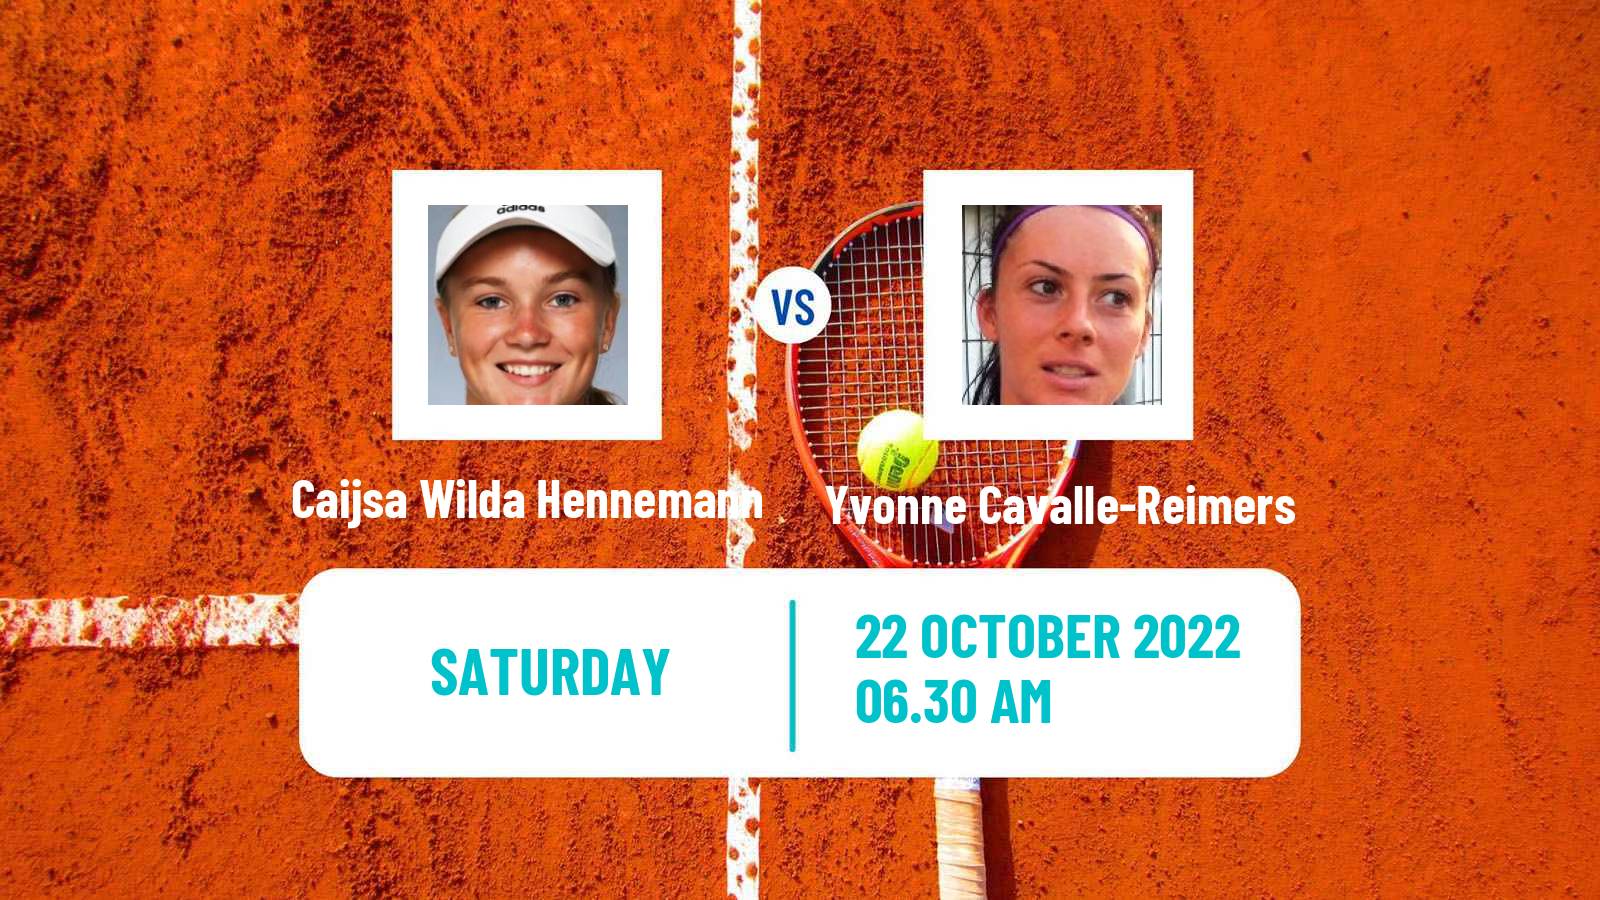 Tennis ITF Tournaments Caijsa Wilda Hennemann - Yvonne Cavalle-Reimers